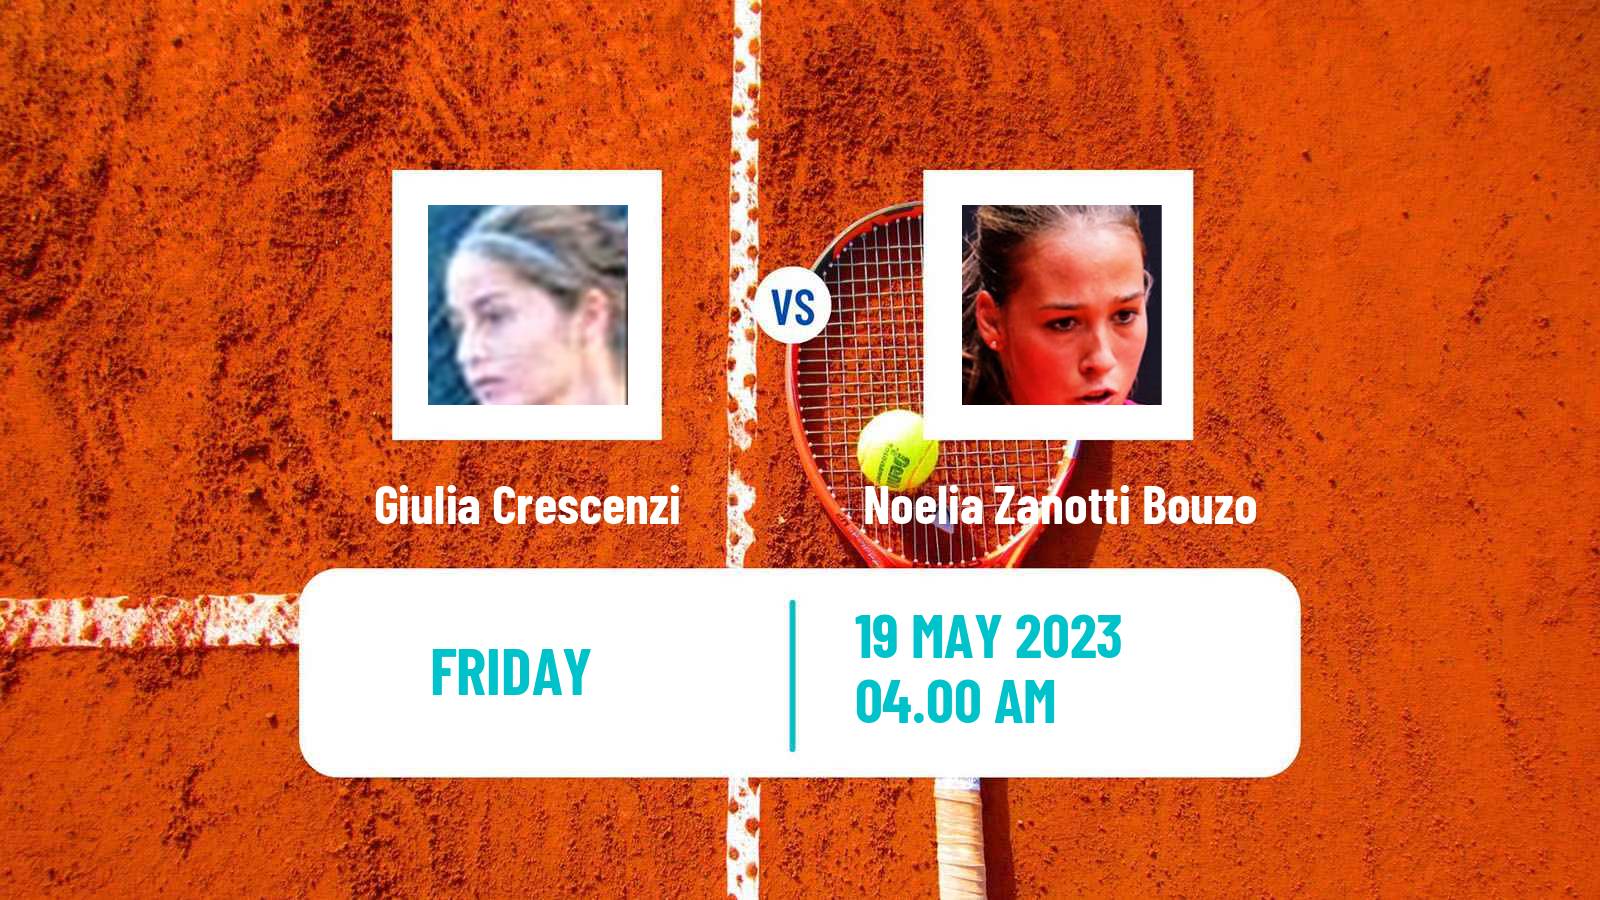 Tennis ITF W15 Monastir 16 Women Giulia Crescenzi - Noelia Zanotti Bouzo